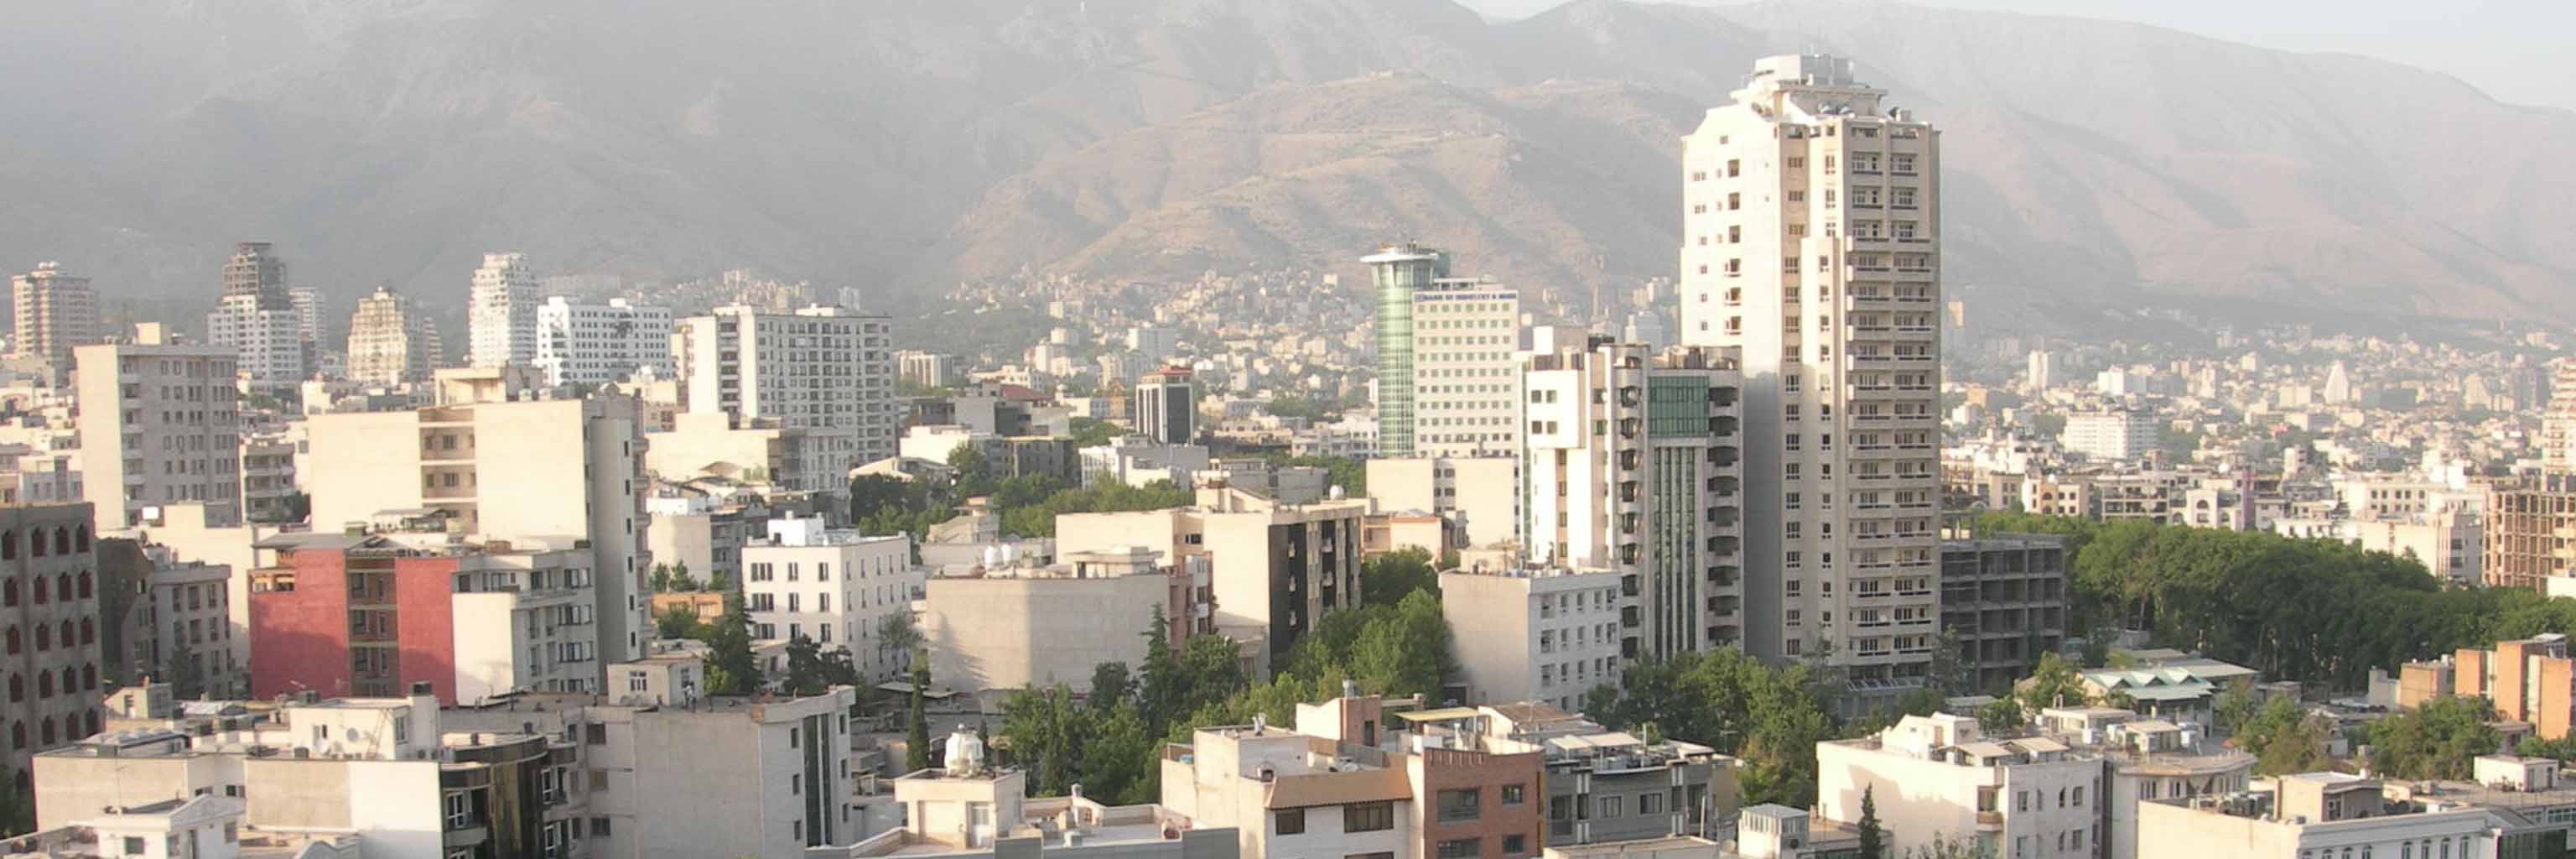 Downtown Tehran, Iran